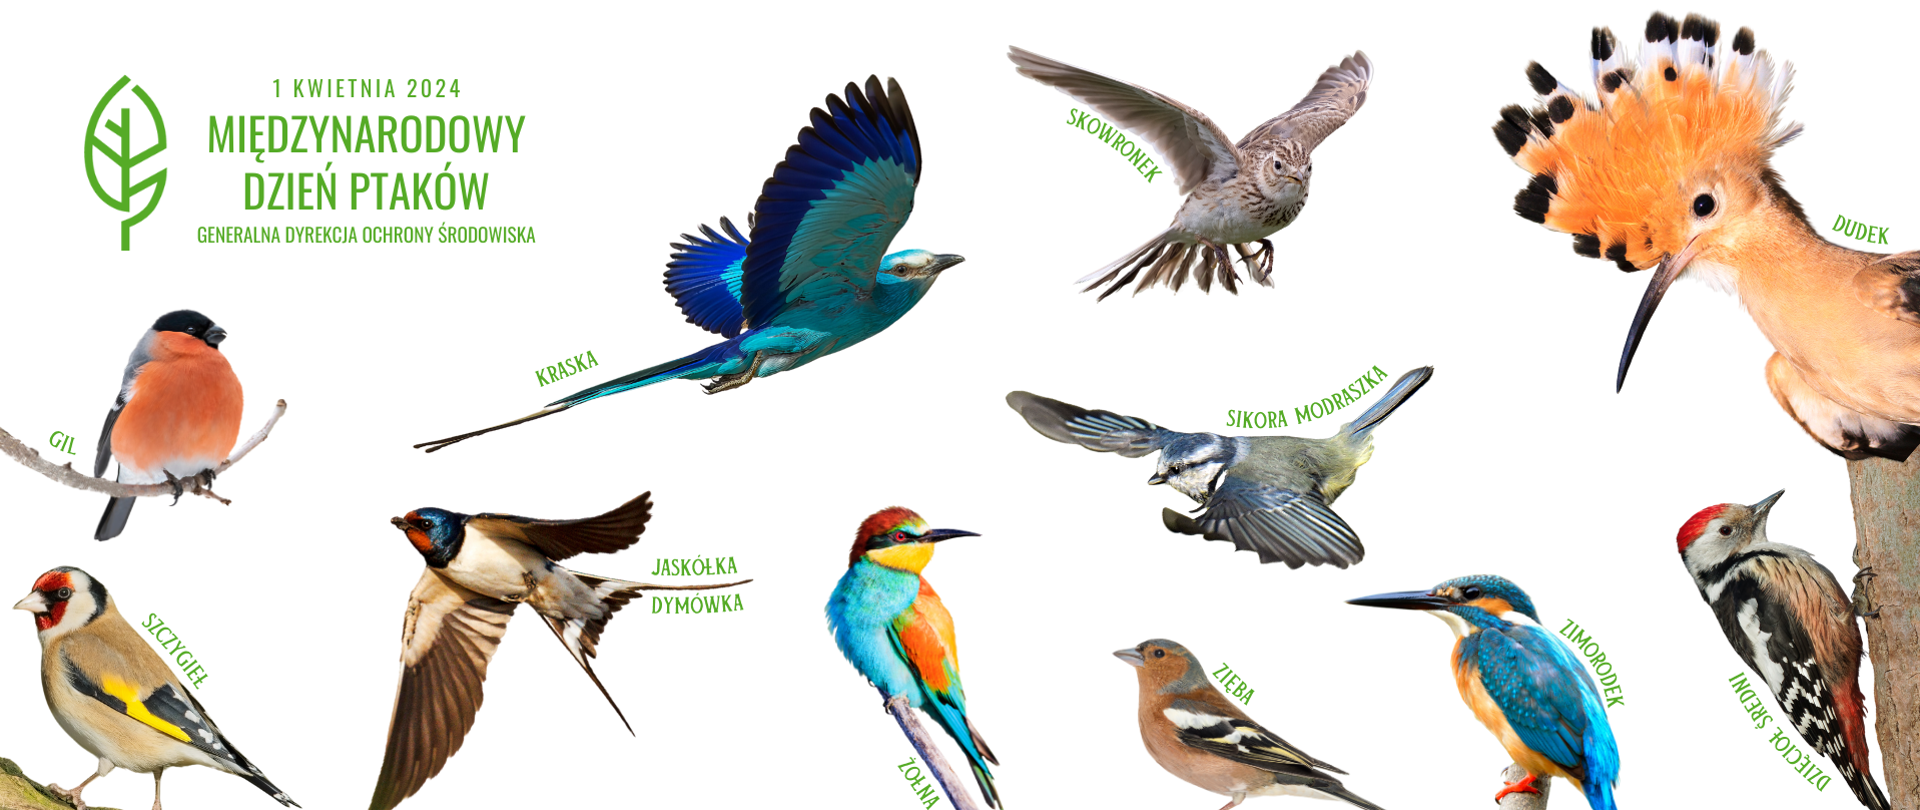 Na białym tle wizerunki kolorowych ptaków: gil, szczygieł, kraska, jaskółka dymówka, żołna, skowronek, sikorka modraszka zięba, dudek, zimorodek, dzięcioł średni.
W lewym górnym rogu napis Międzynarodowy Dzień Ptaków i logo Generalnej Dyrekcji Ochrony Środowiska (zielony liść na białym tle). 